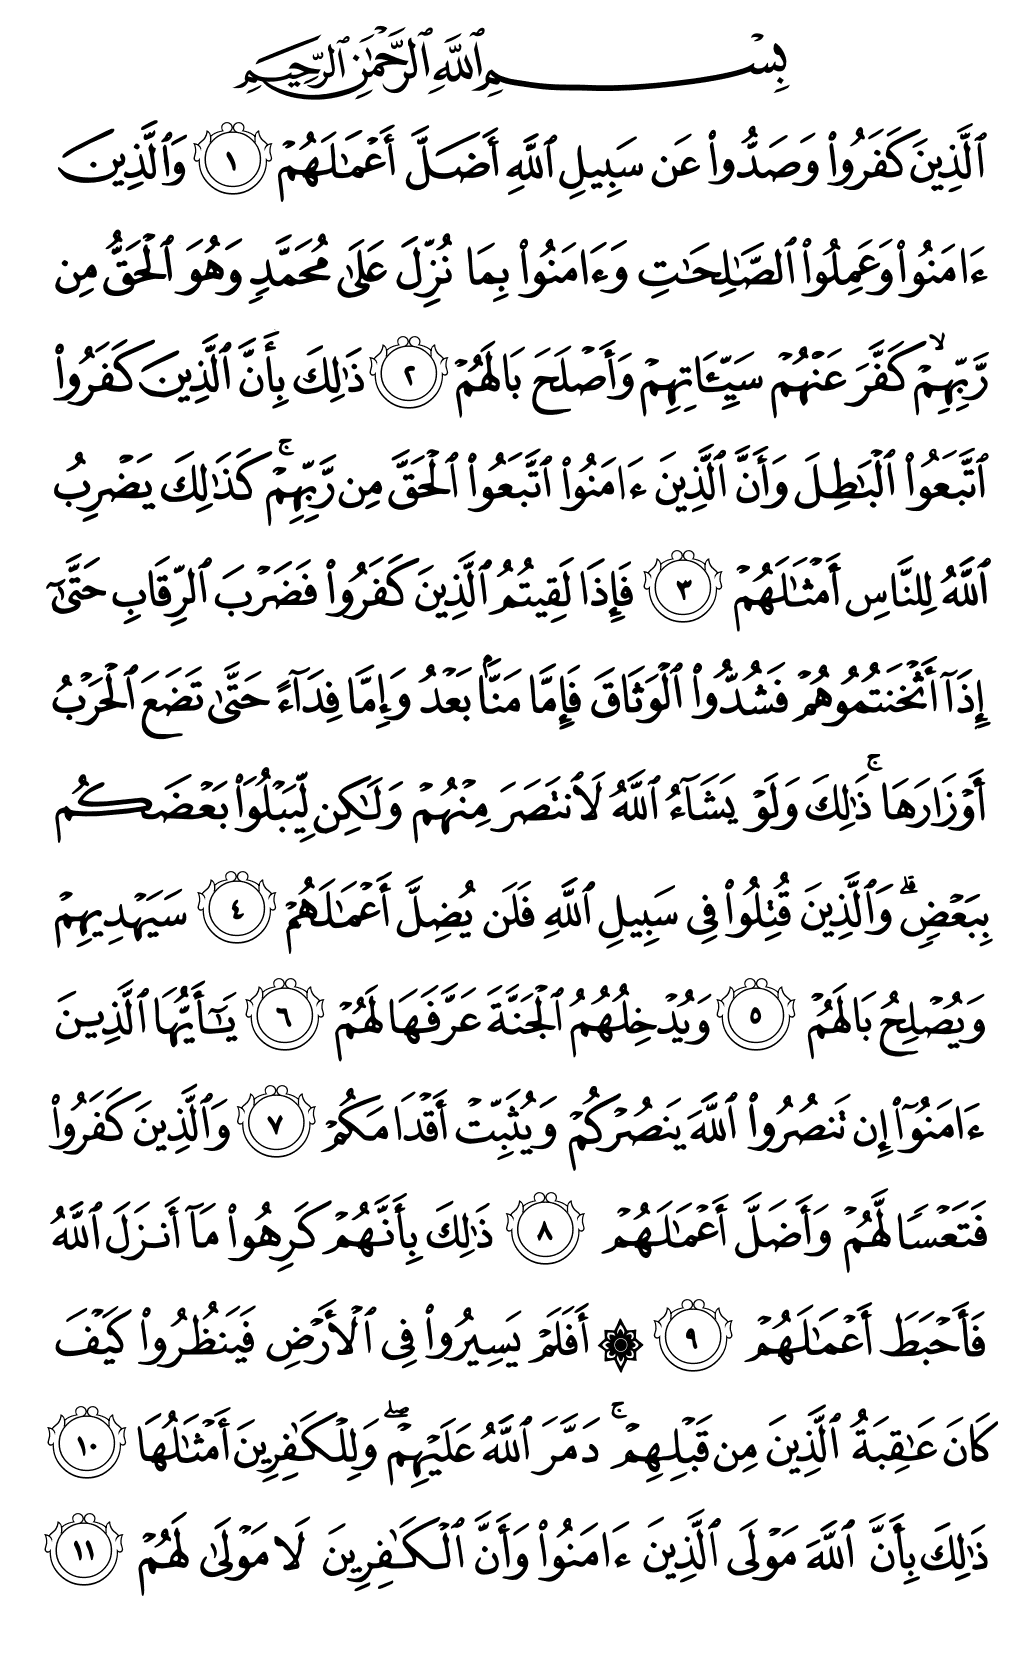 الصفحة رقم 507 من القرآن الكريم